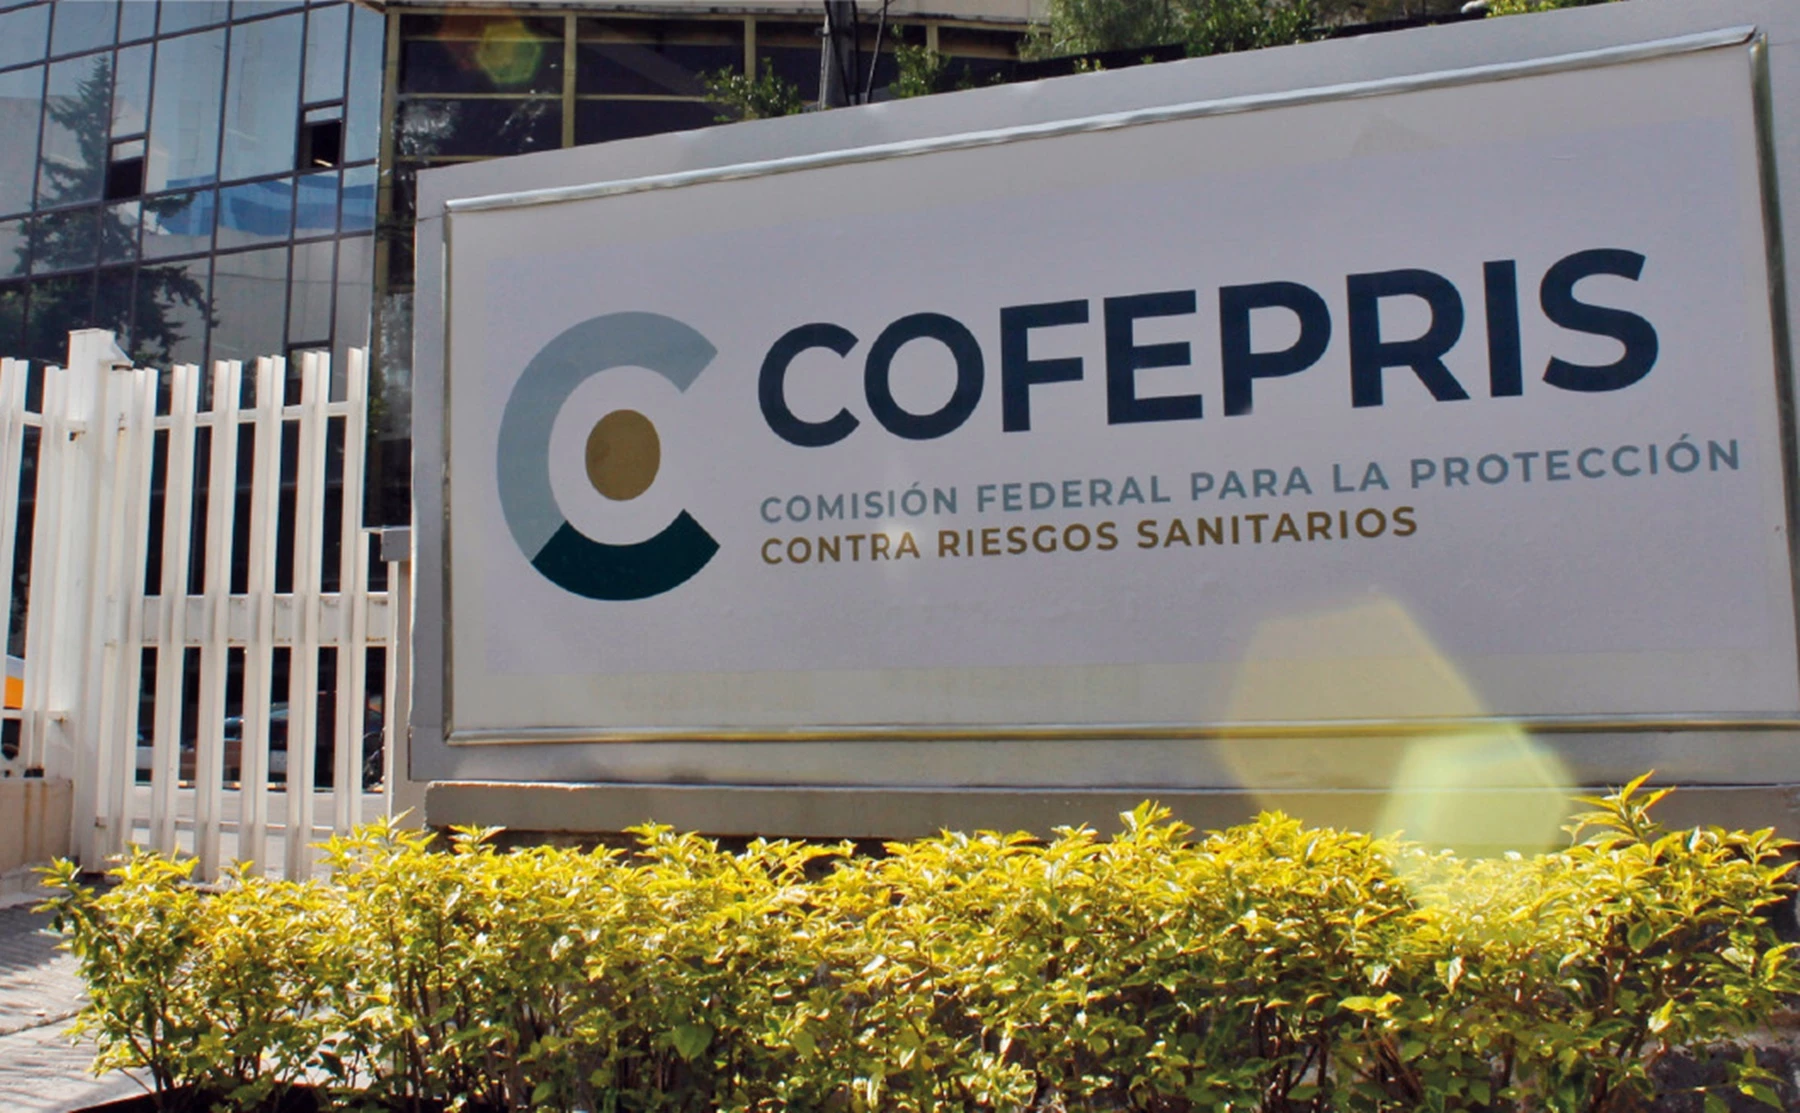 La Cofepris establece nuevas reglas de vigilancia, fomento y control sanitario a nivel nacional